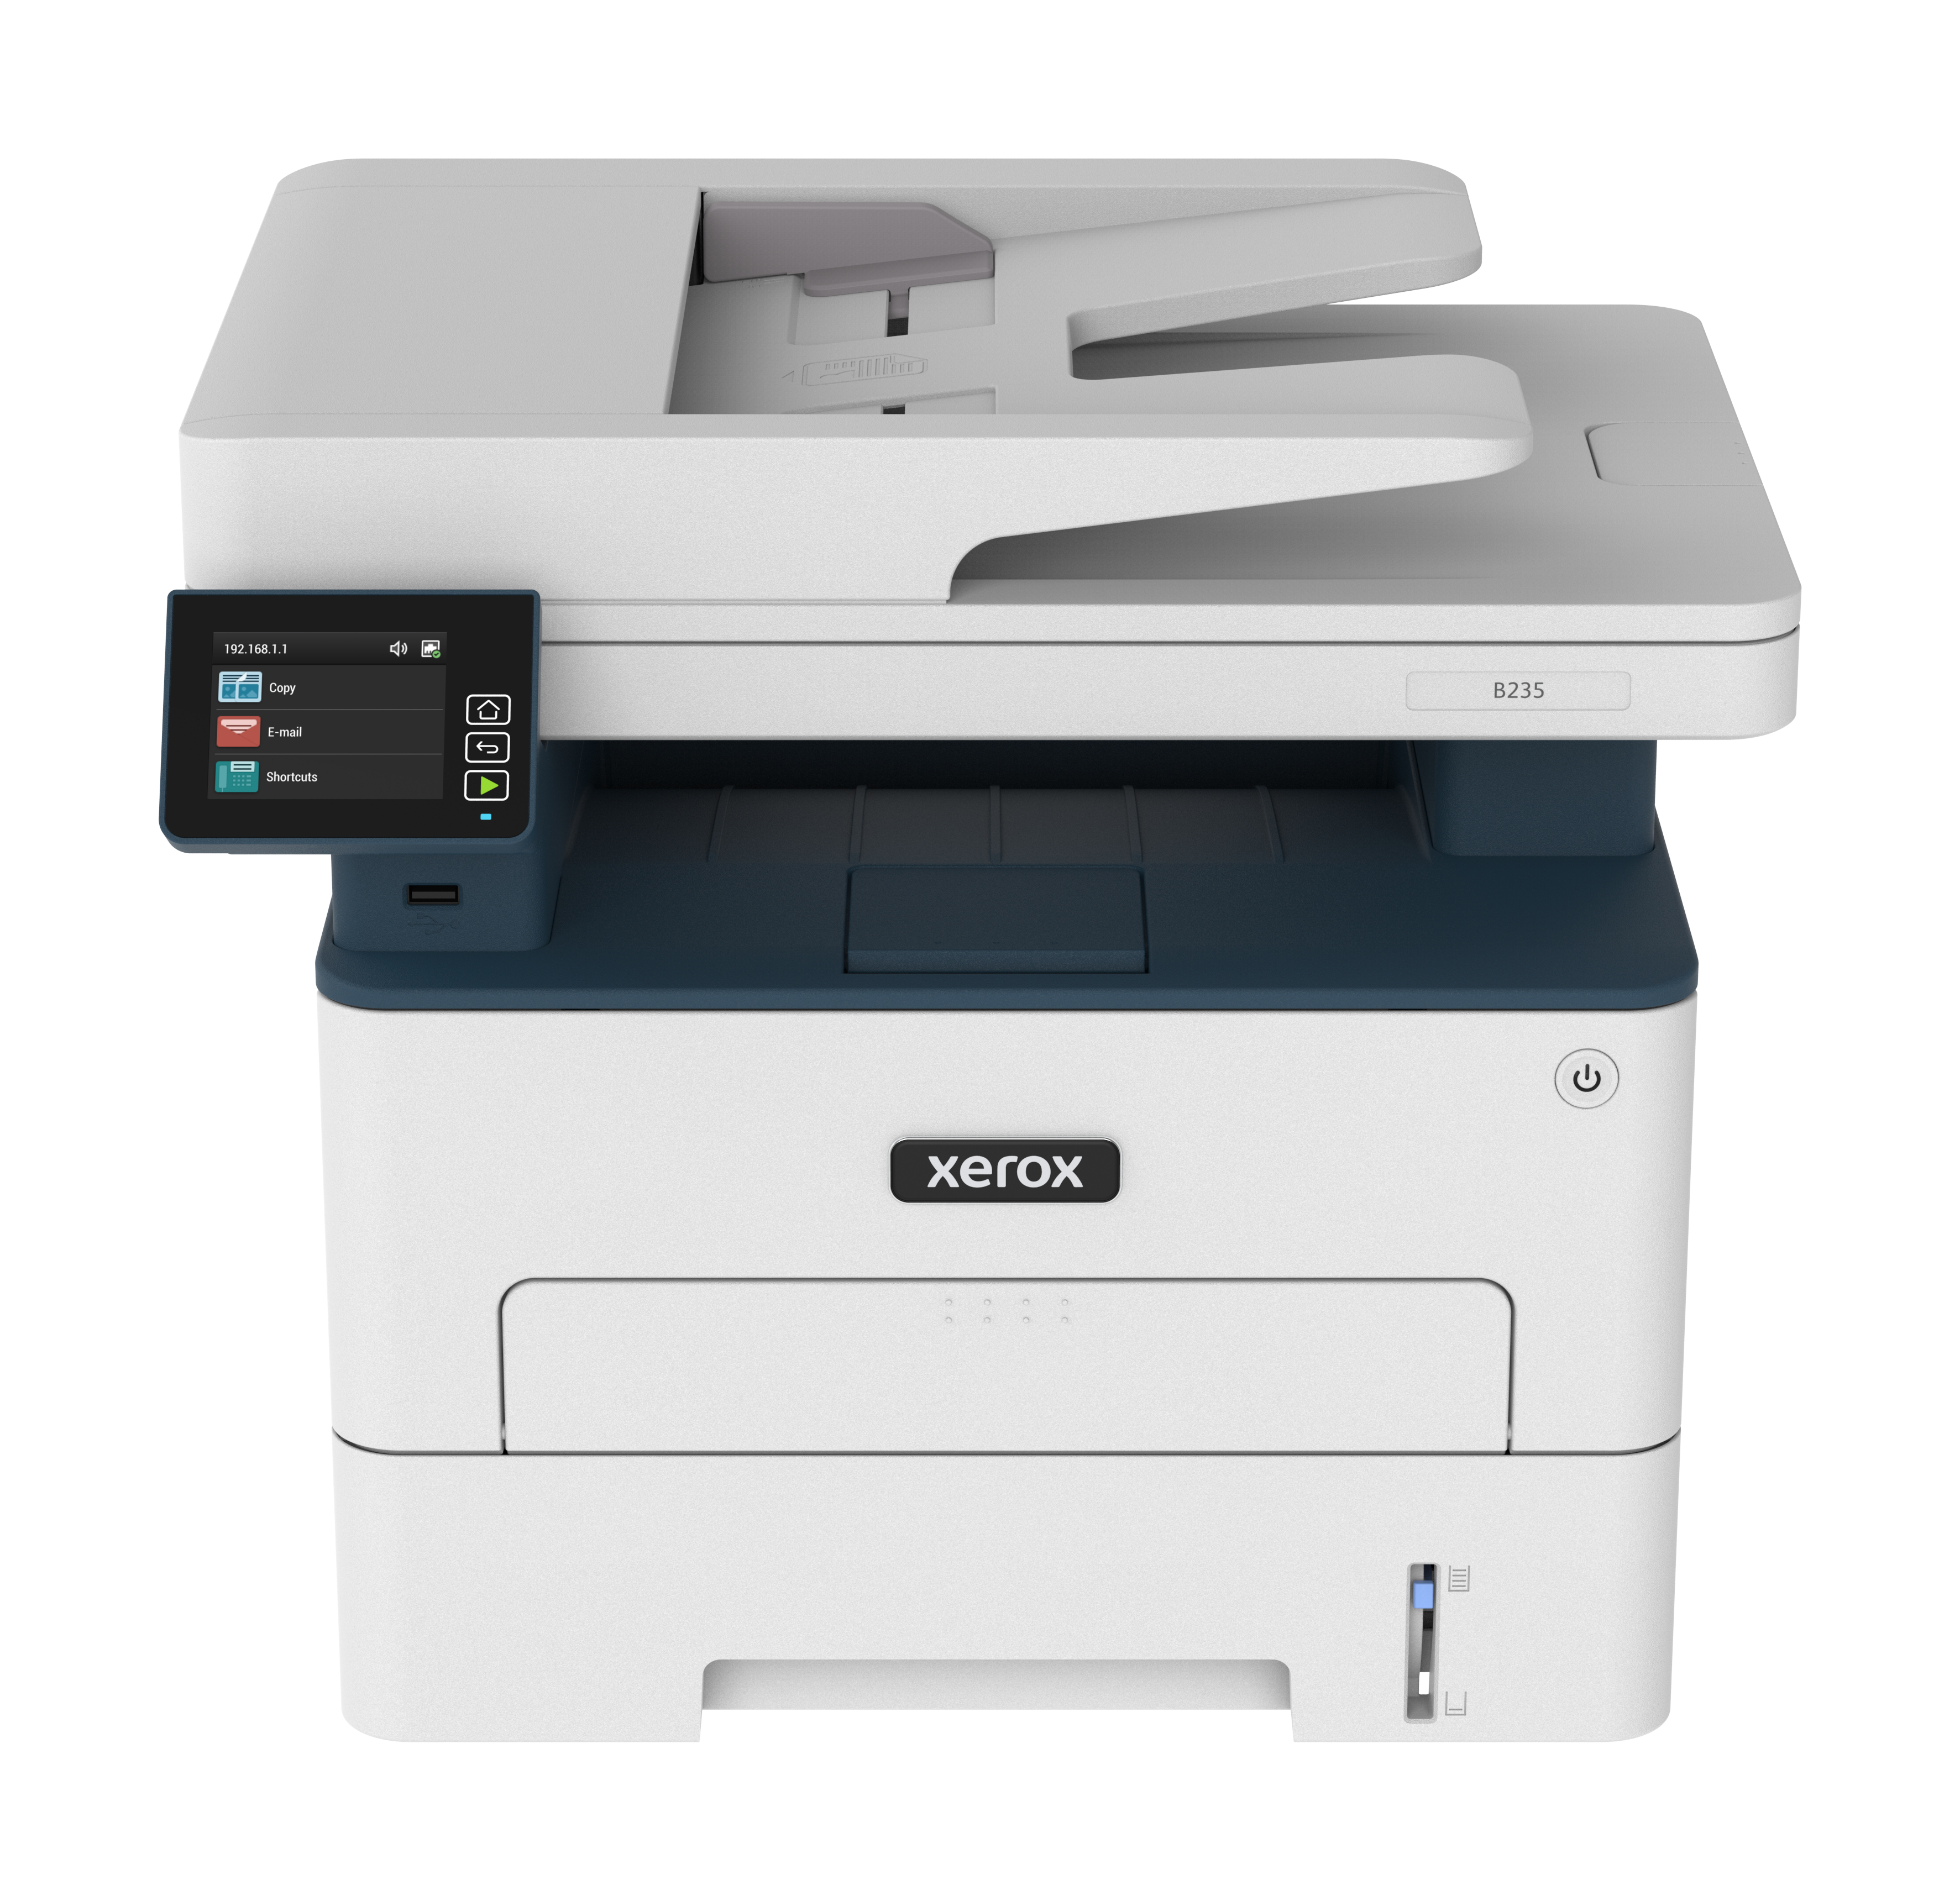 מדפסת רב שימושית B235 החדשה בשחור-לבן - Xerox